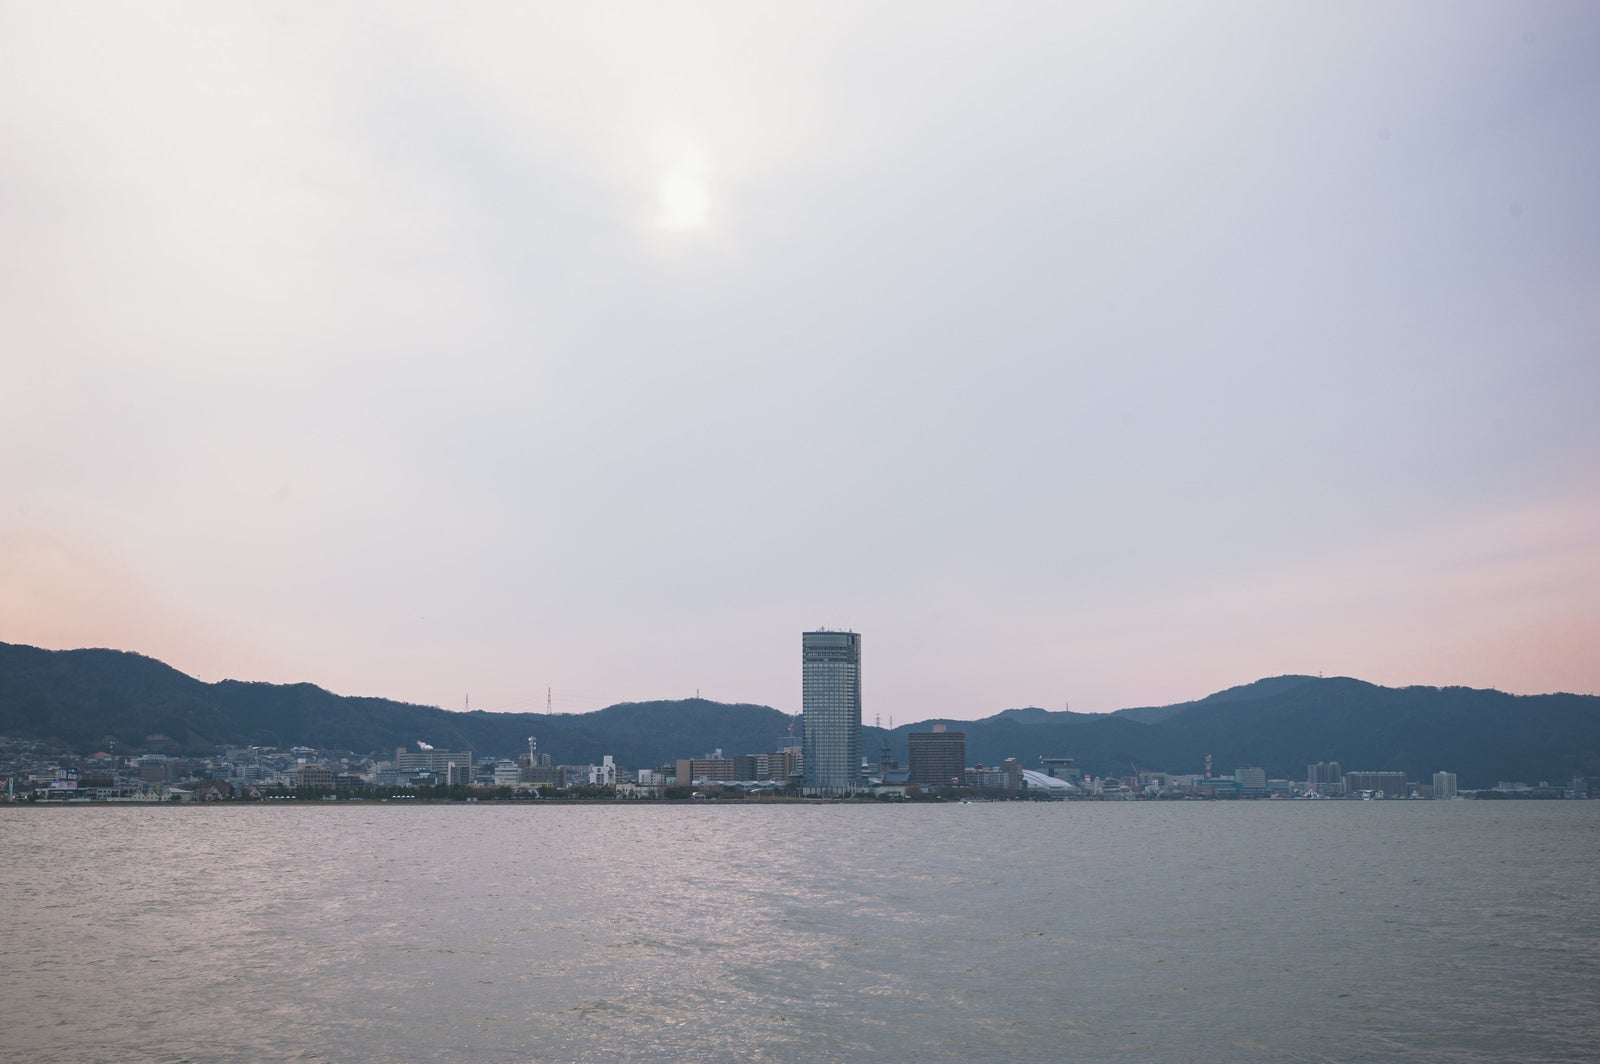 「琵琶湖ホテル遠景」の写真